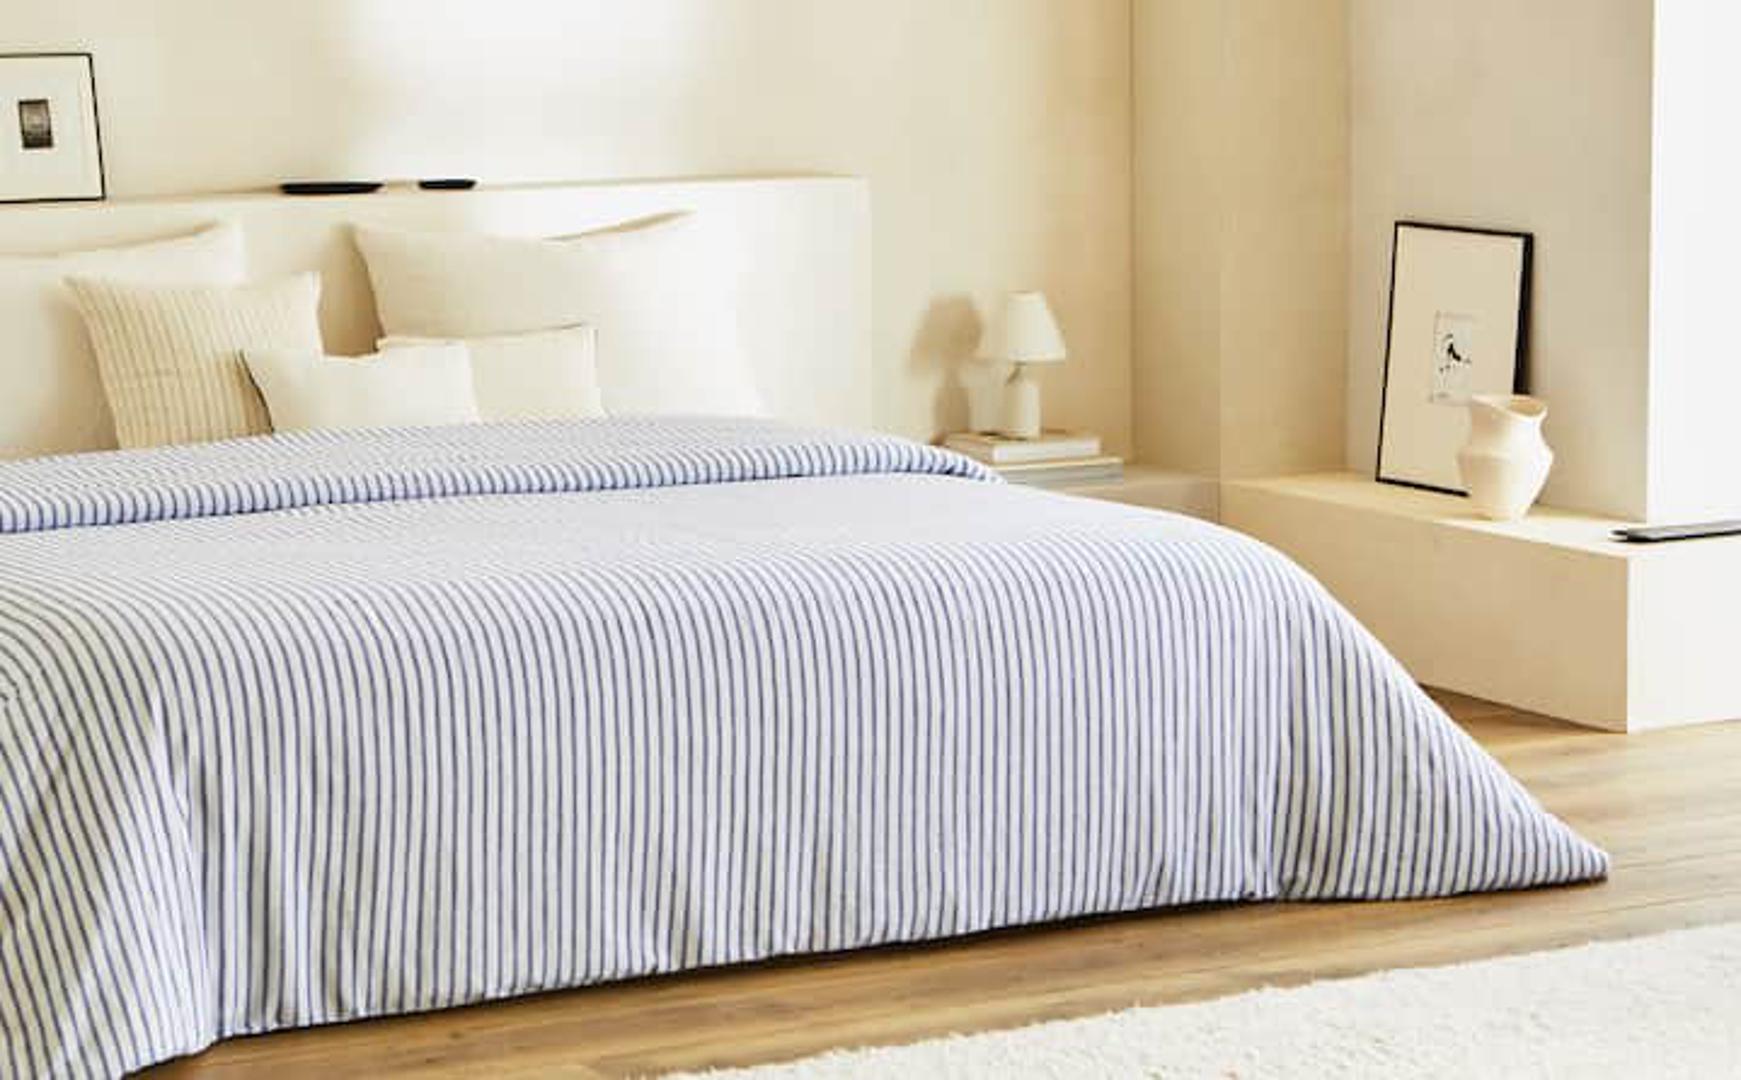 Kolekcija se sastoji od posteljina, prekrivača i elegentnih detalja koji će dići spavaću sobu na viši nivo